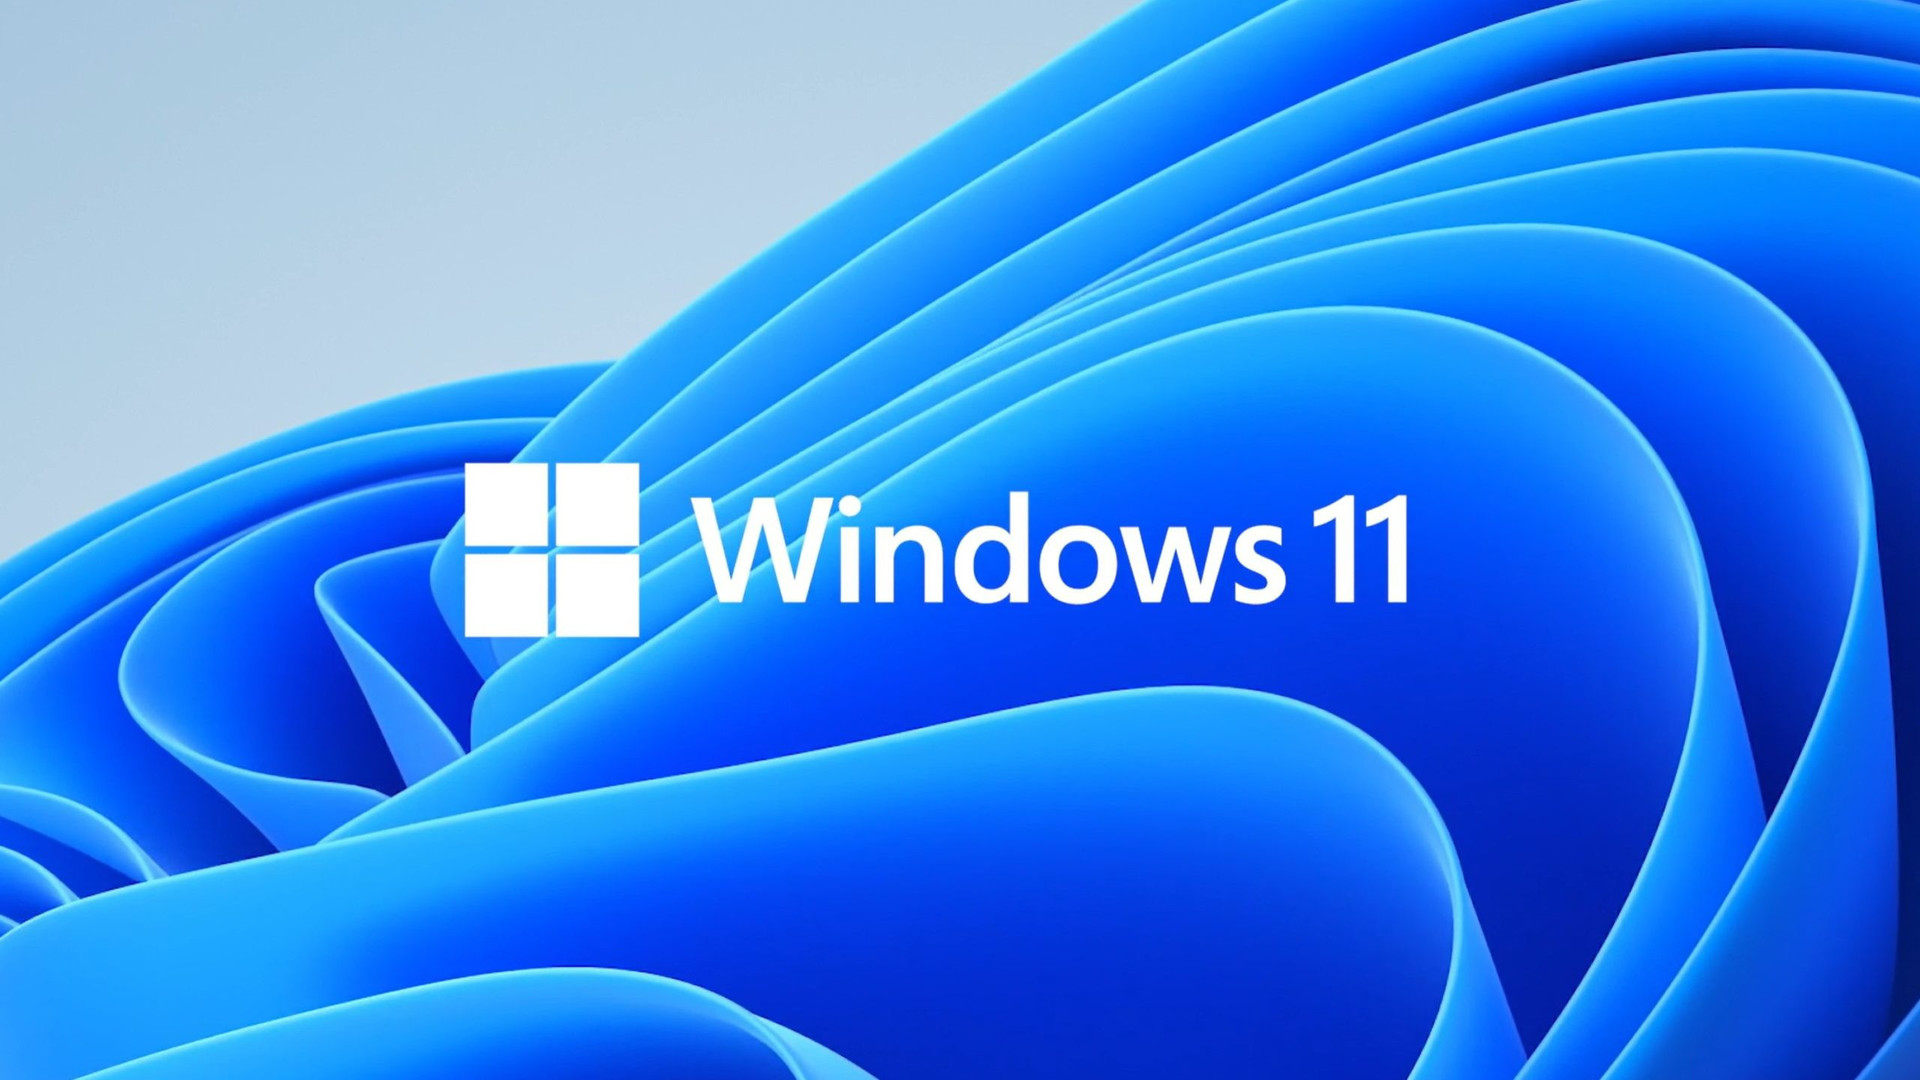 Windows 11 logo image scaled